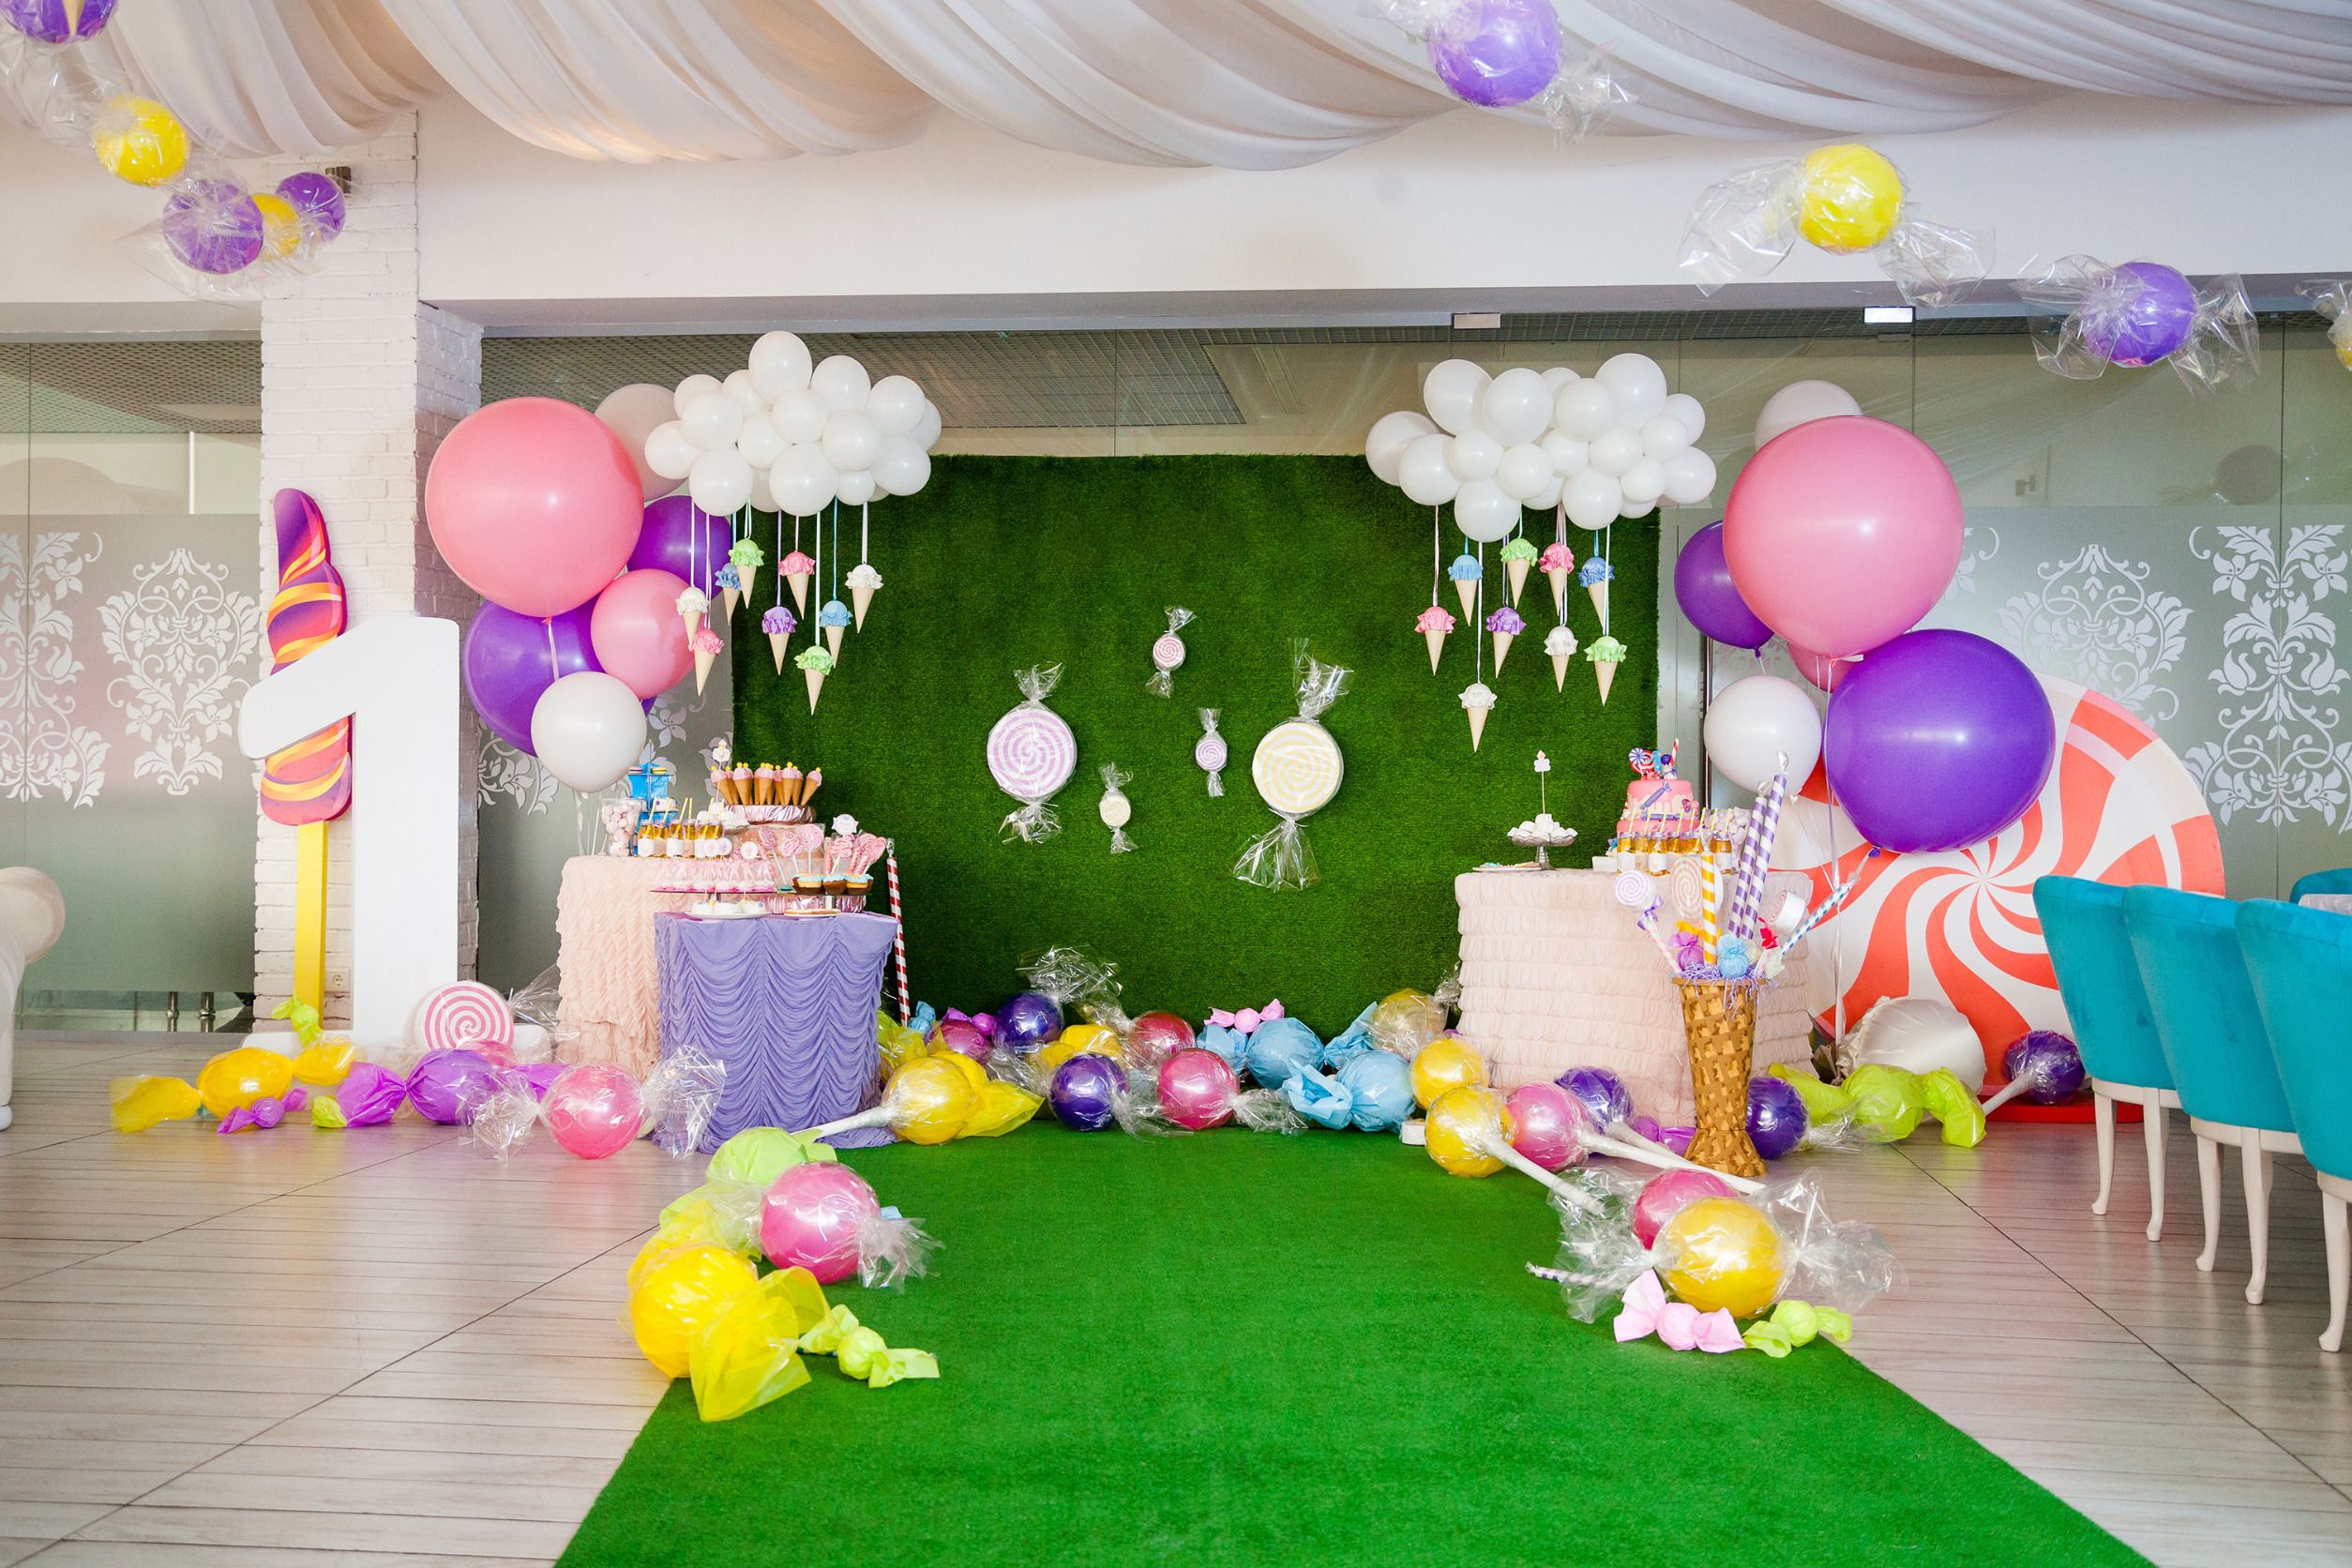 Auf dem Bild ist ein mit großen und kleinen weißen, rosanen und lila Luftballons geschmückter Raum zu sehen mit Dekoartikeln in Form von großen Bonbons, Zuckerstangen und Lutschern vor einem Tisch mit vielen Süßigkeiten.